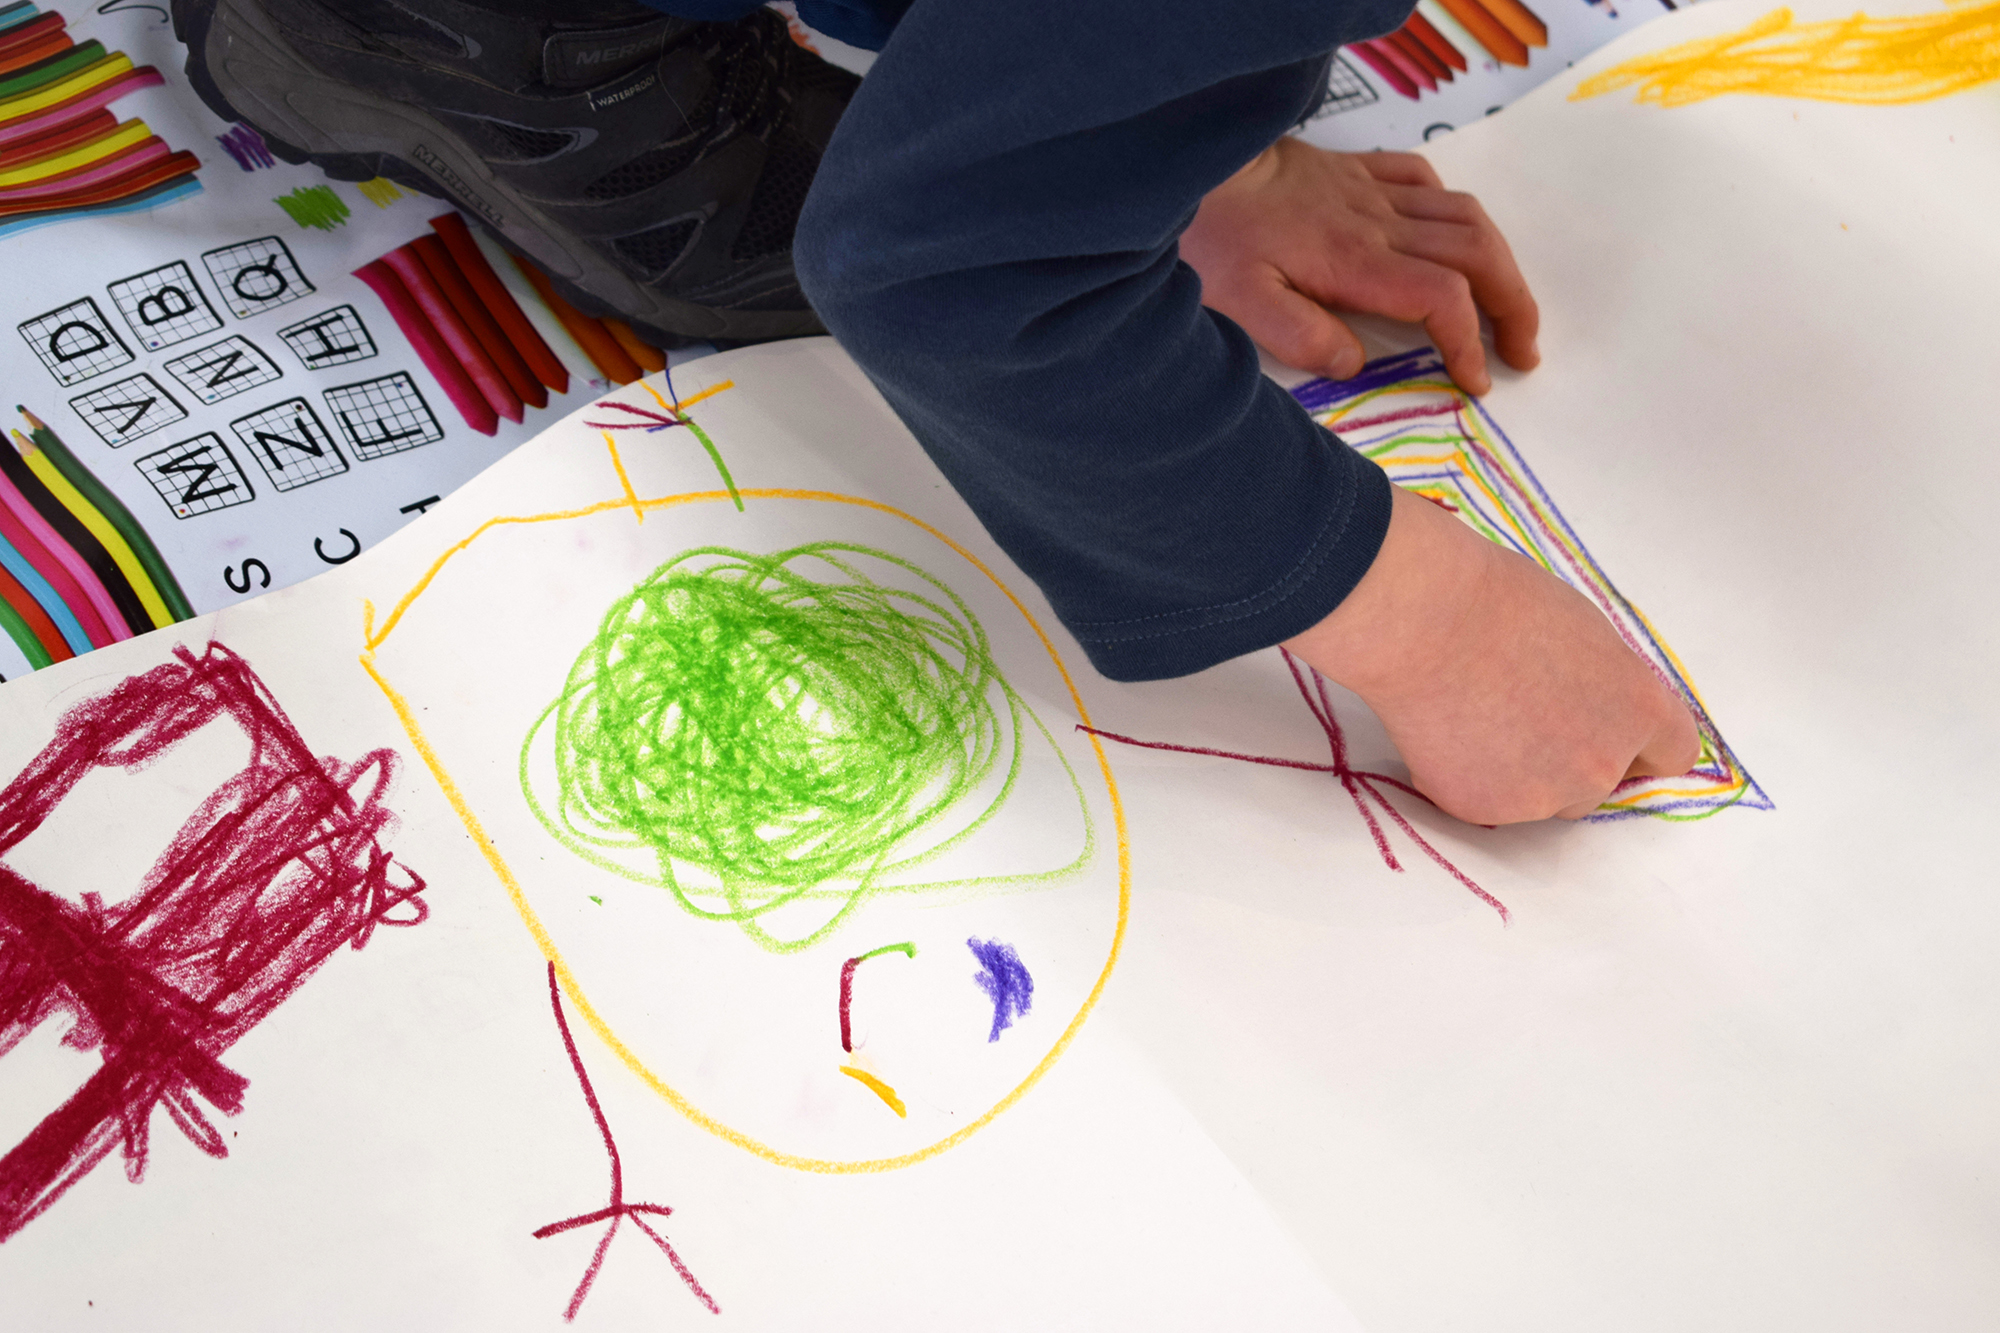 Tenavatuokio on lasten oma toiminnallinen opastus Jussi TwoSevenin All Is One -näyttelyssä Kimmo Pyykkö -taidemuseossa kesällä 2020.